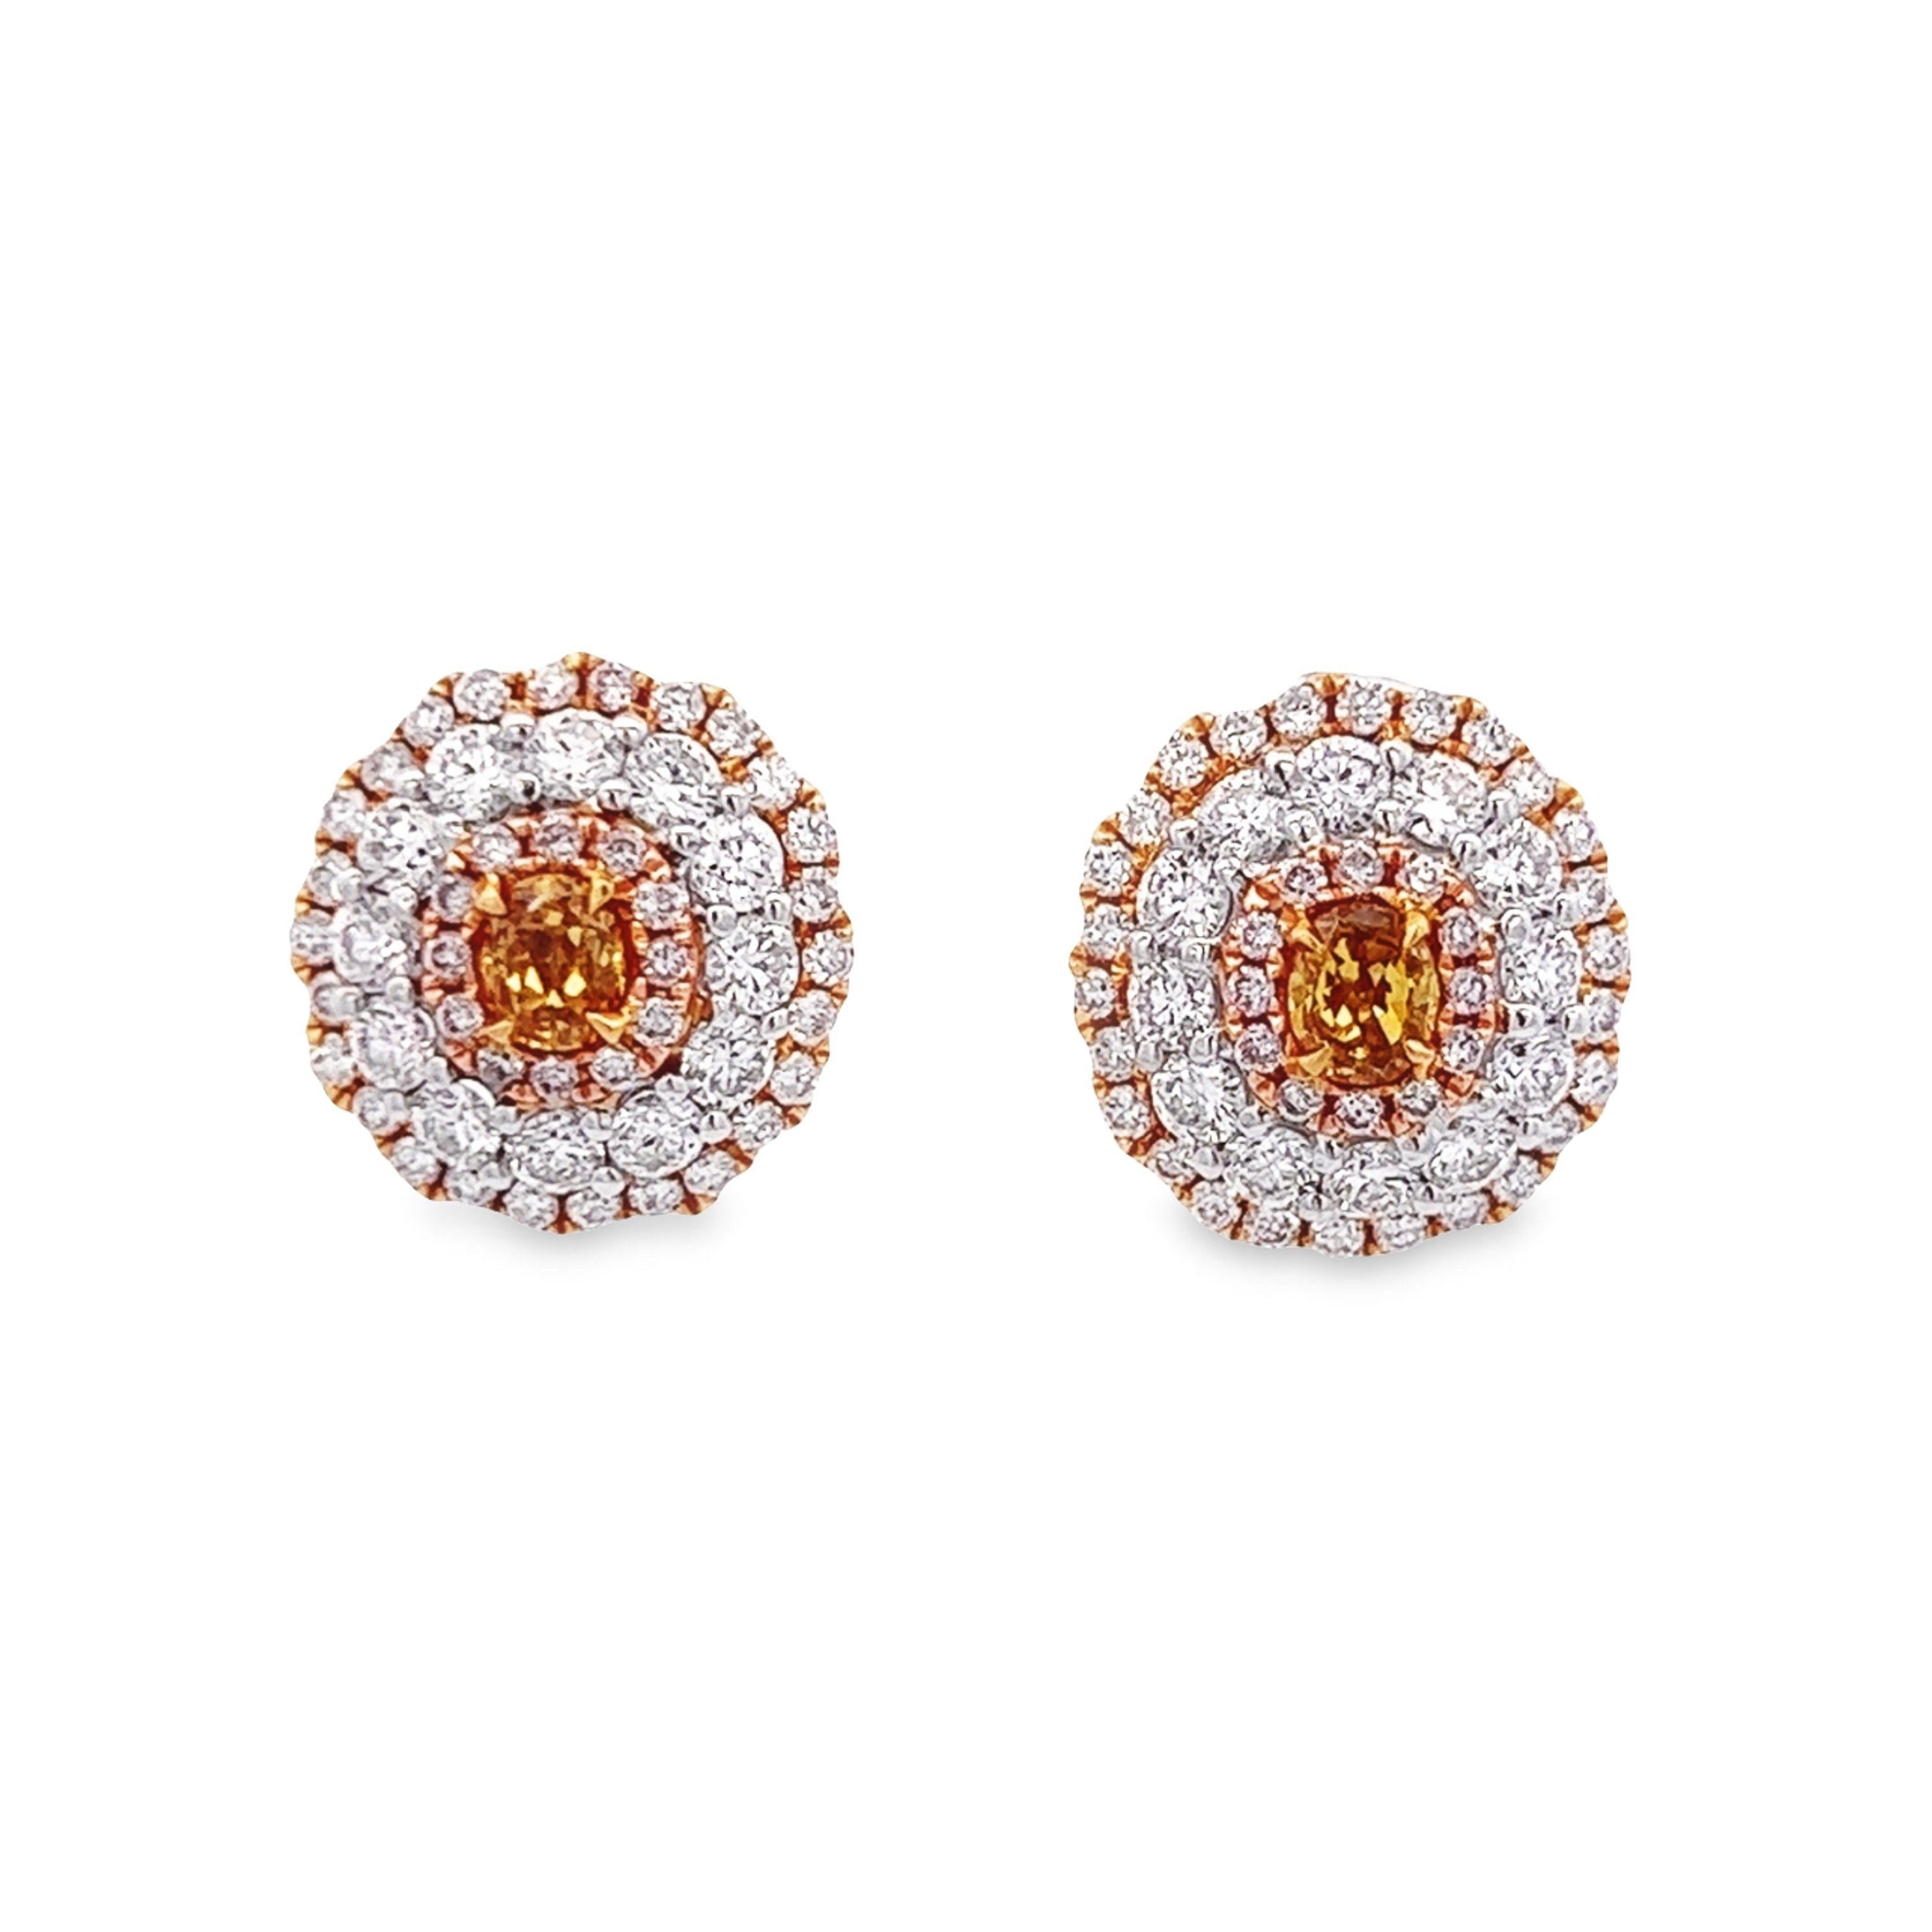 Atemberaubende dreifache Diamant-Halo-Ohrringe von Alexander Beverly Hills, die durch ihre Farbe bestechen.
1,91 Karat Gesamtgewicht der Diamanten. 
2 ovale Diamanten im Galopp, 0,40. Ungefähr Fancy Intense Orange Brown. Ergänzt durch 124 runde